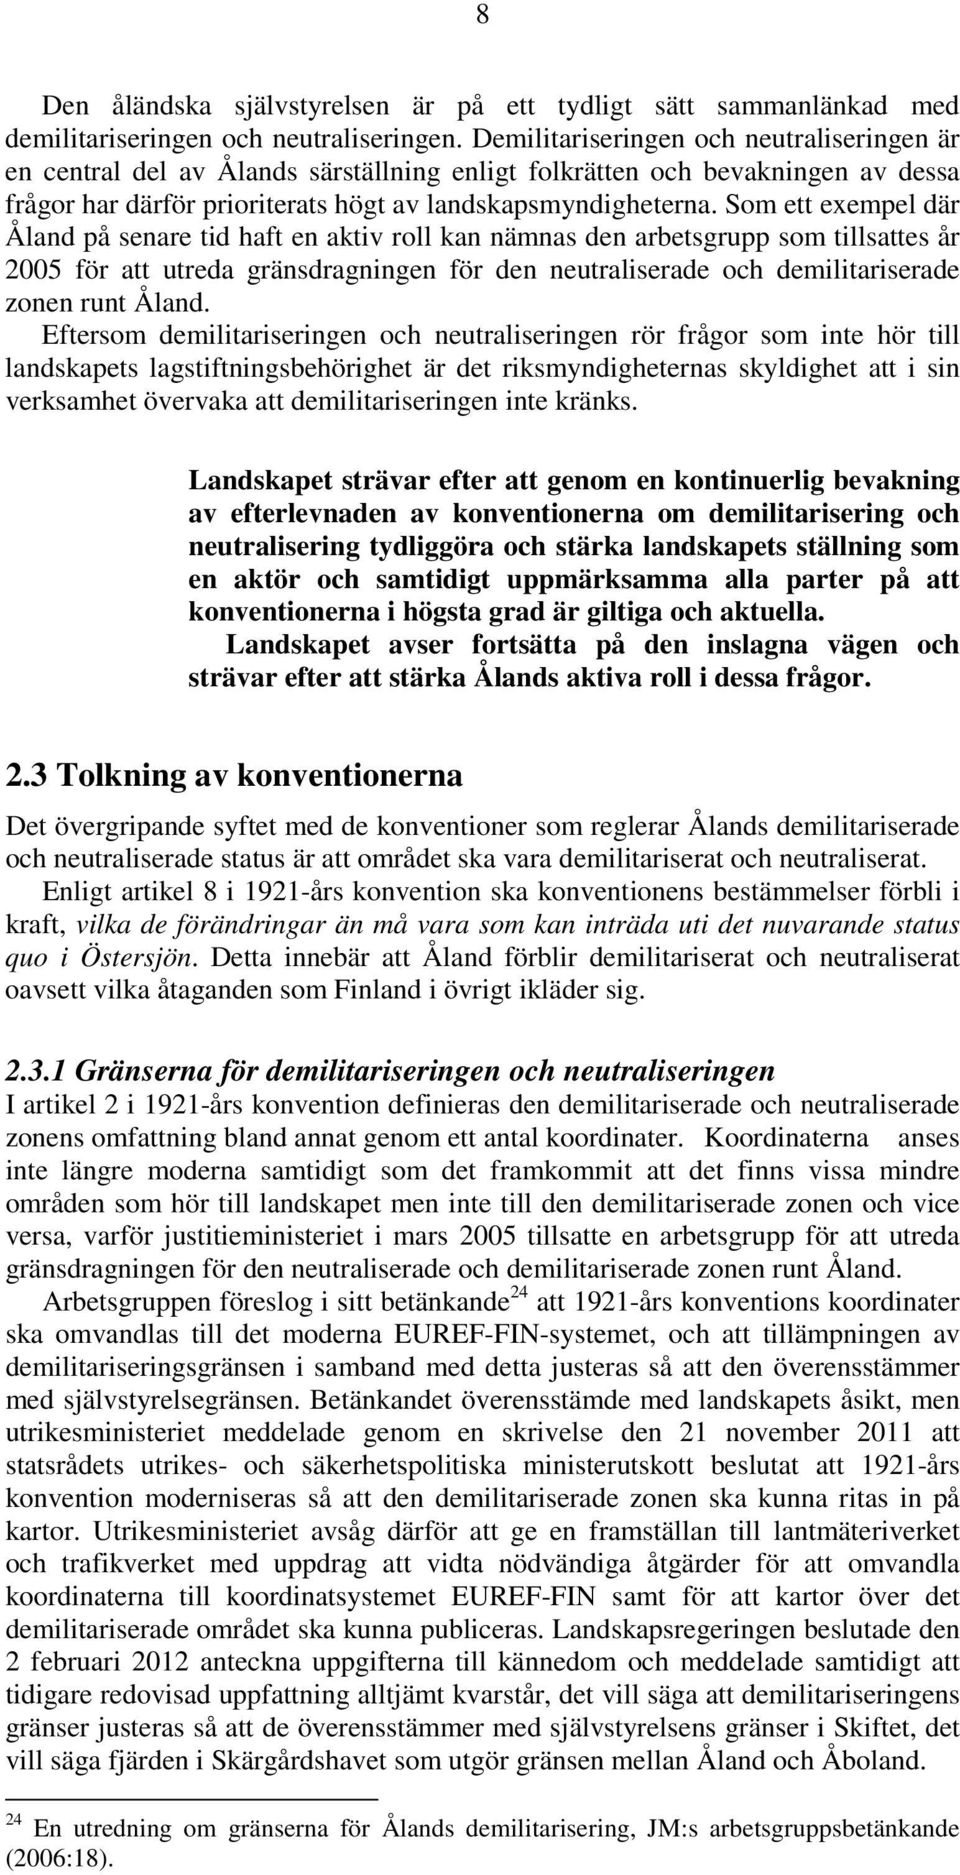 Som ett exempel där Åland på senare tid haft en aktiv roll kan nämnas den arbetsgrupp som tillsattes år 2005 för att utreda gränsdragningen för den neutraliserade och demilitariserade zonen runt